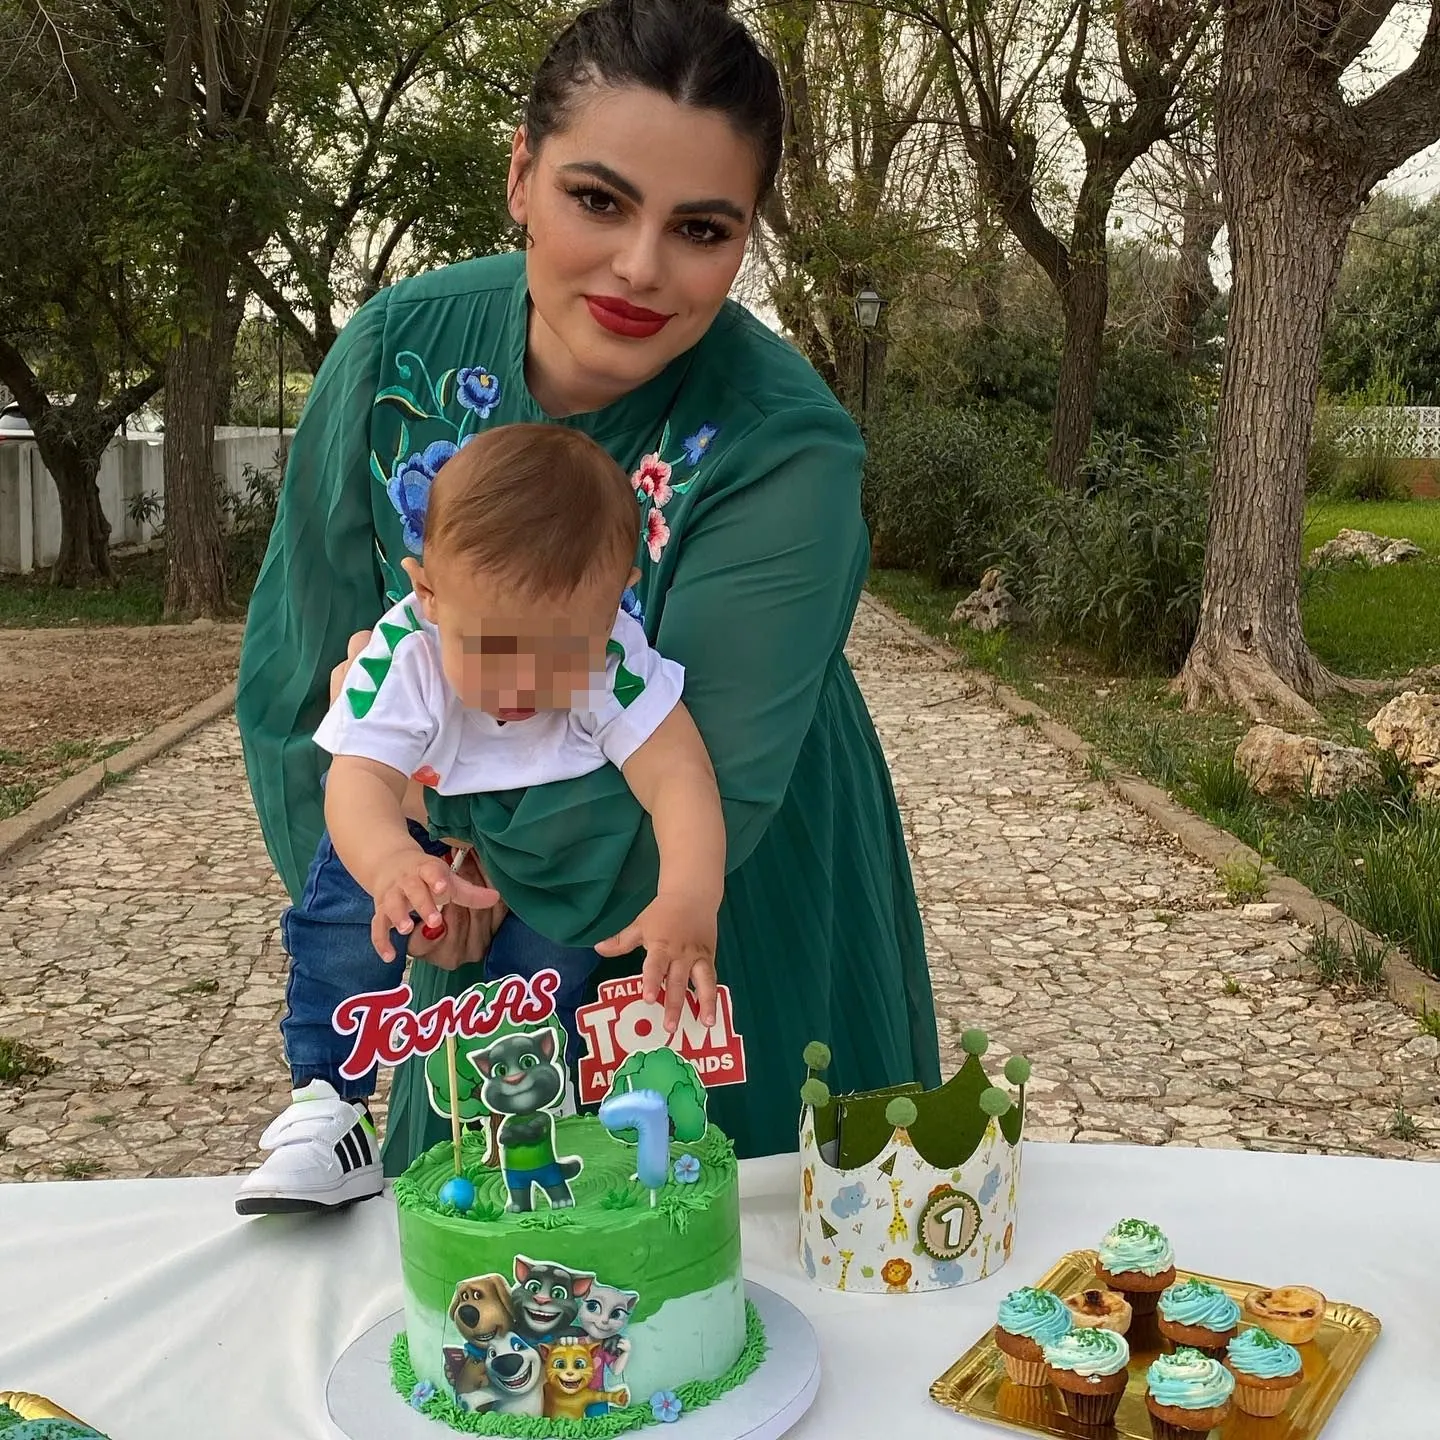 Marisa Jara junto a su hijo, Tomás, en su fiesta de cumpleaños (Instagram)